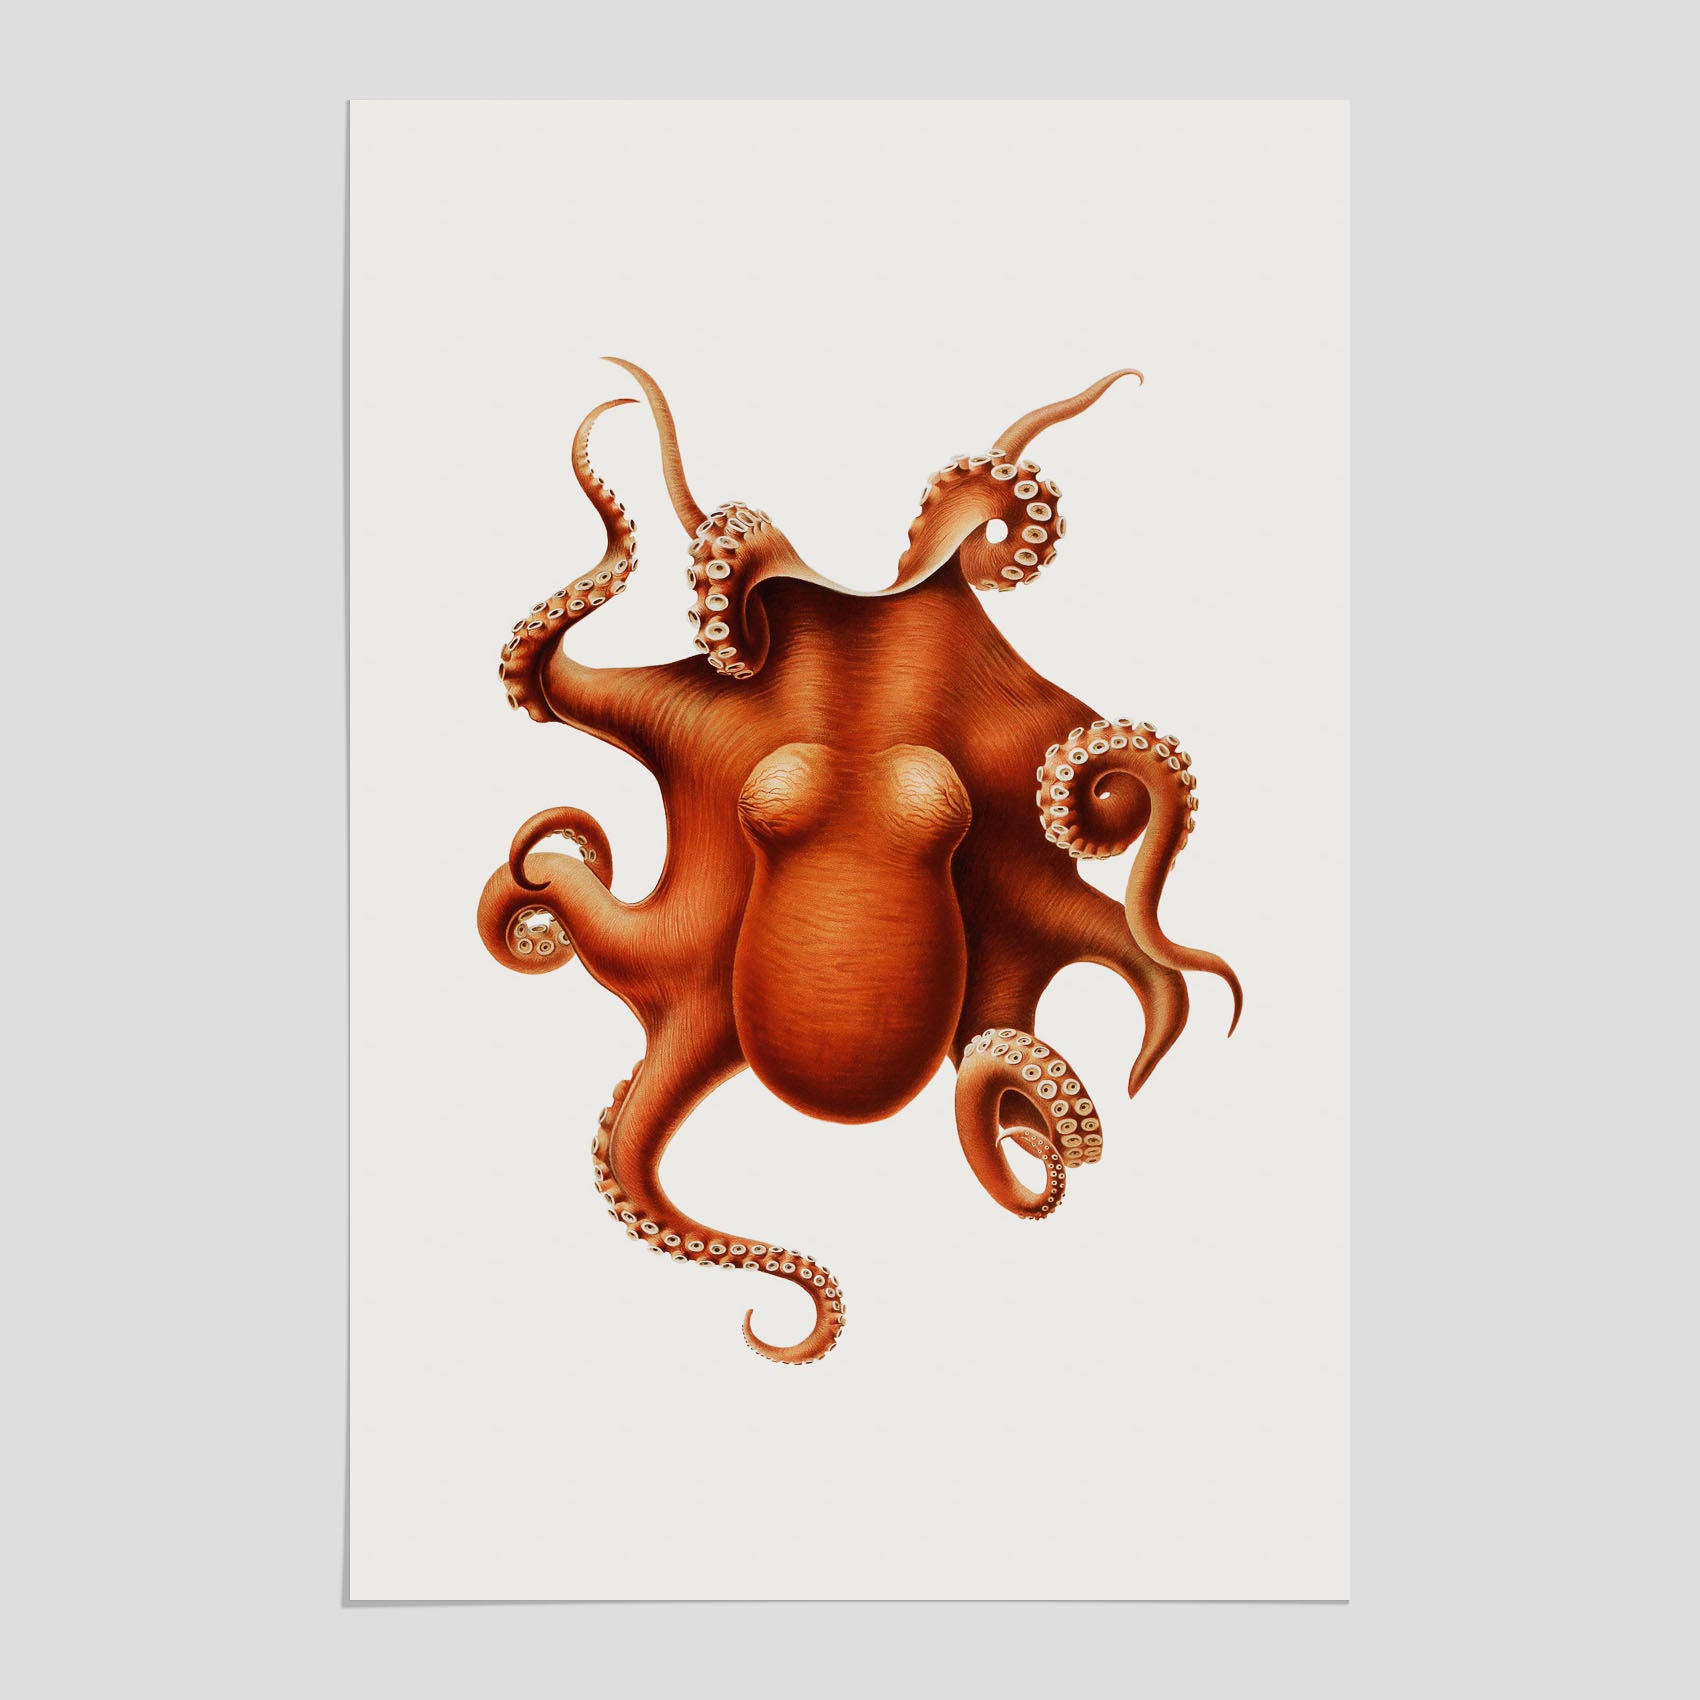 Detaljerad och färgglad poster av en bläckfisk